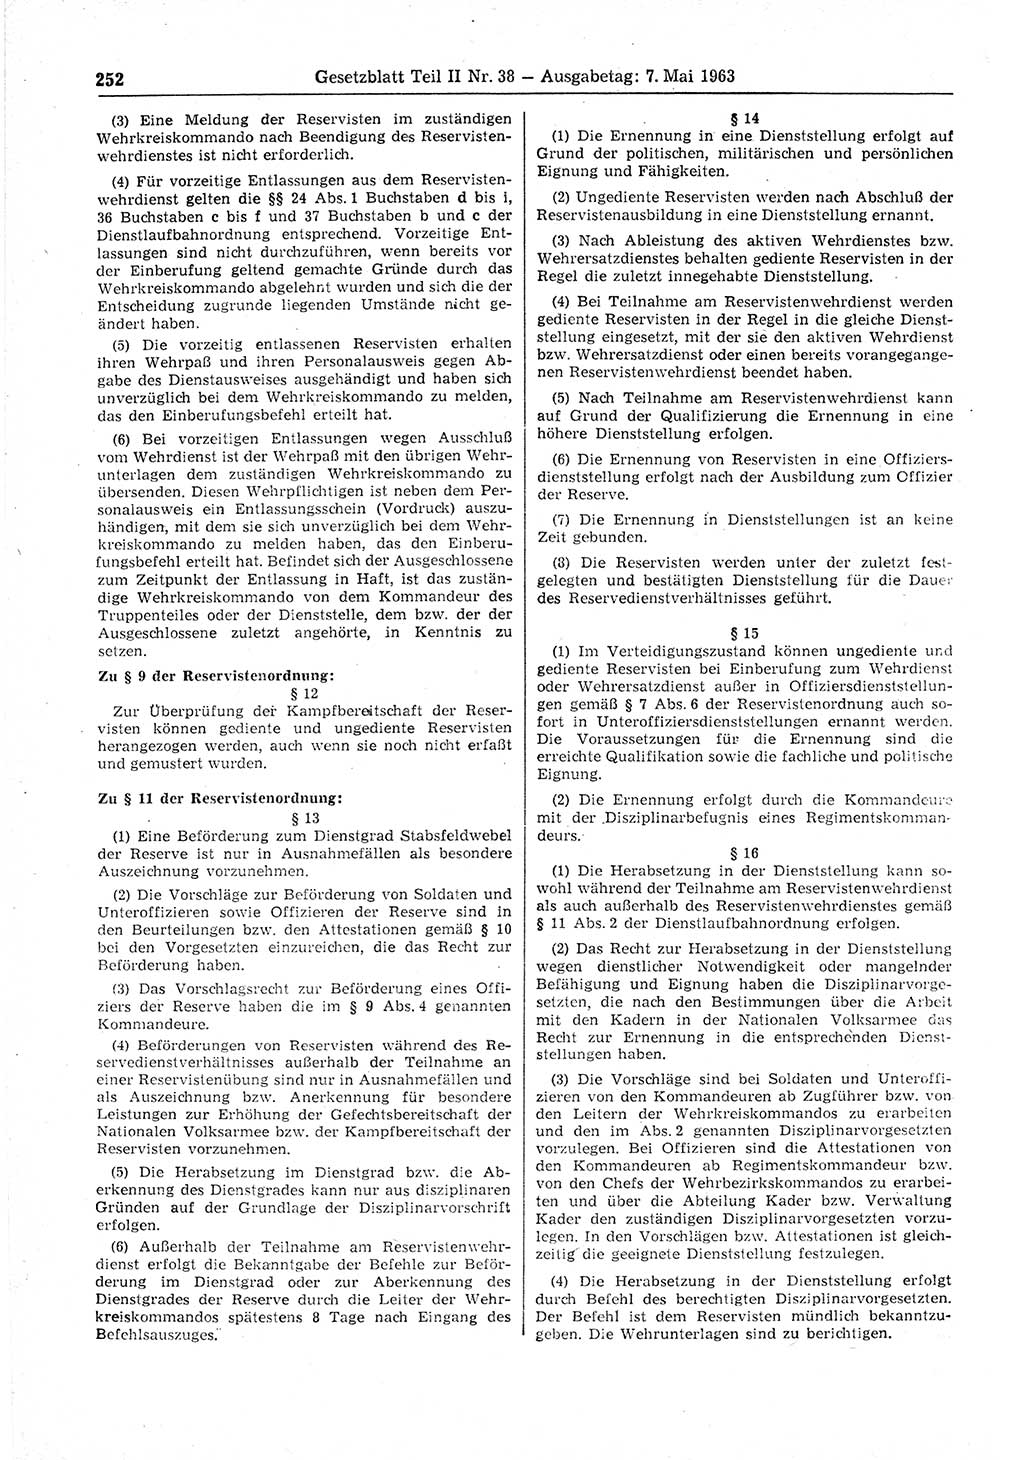 Gesetzblatt (GBl.) der Deutschen Demokratischen Republik (DDR) Teil ⅠⅠ 1963, Seite 252 (GBl. DDR ⅠⅠ 1963, S. 252)